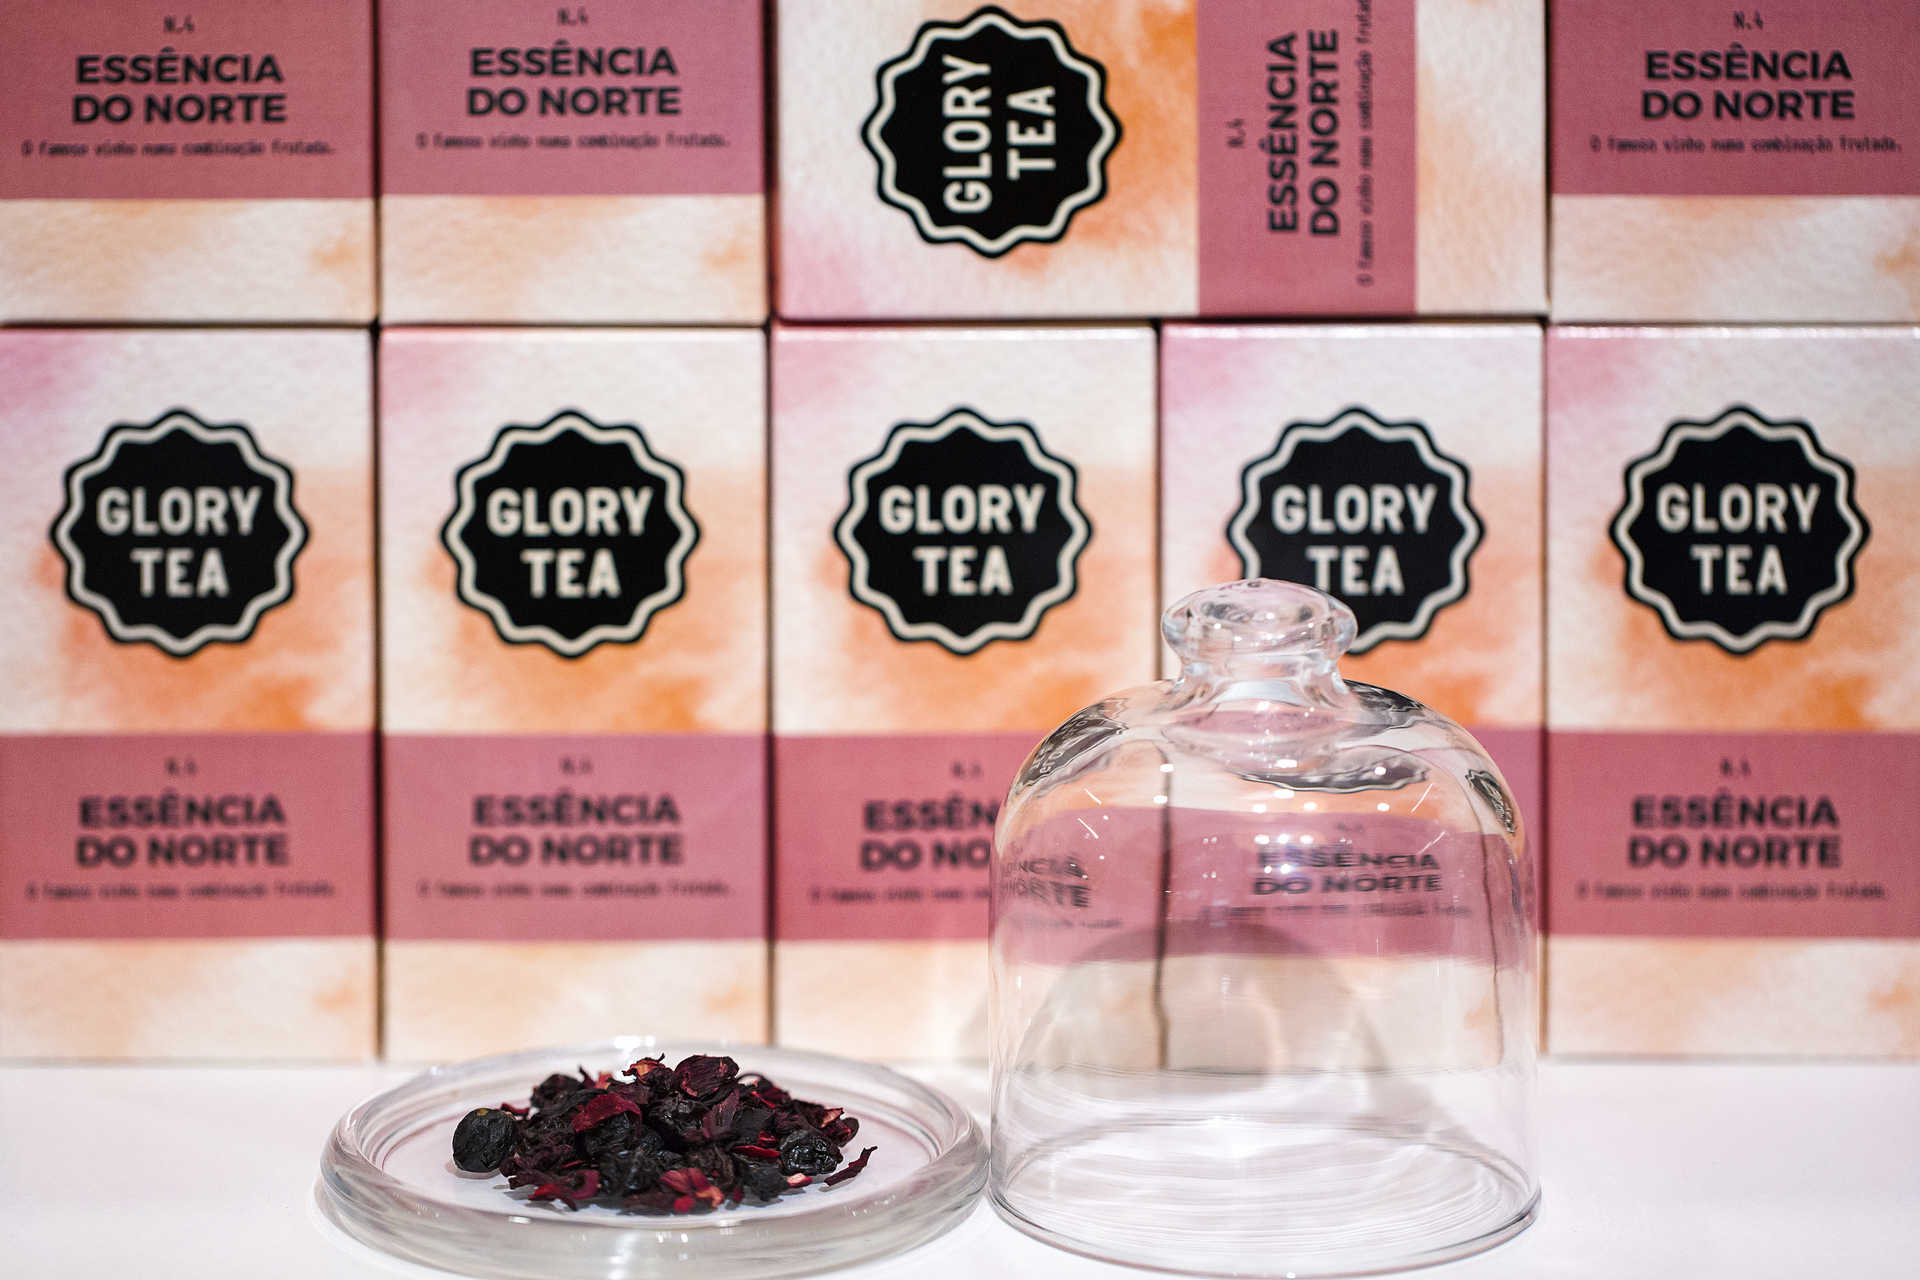 A Glory Tea, marca portuguesa de chás e infusões